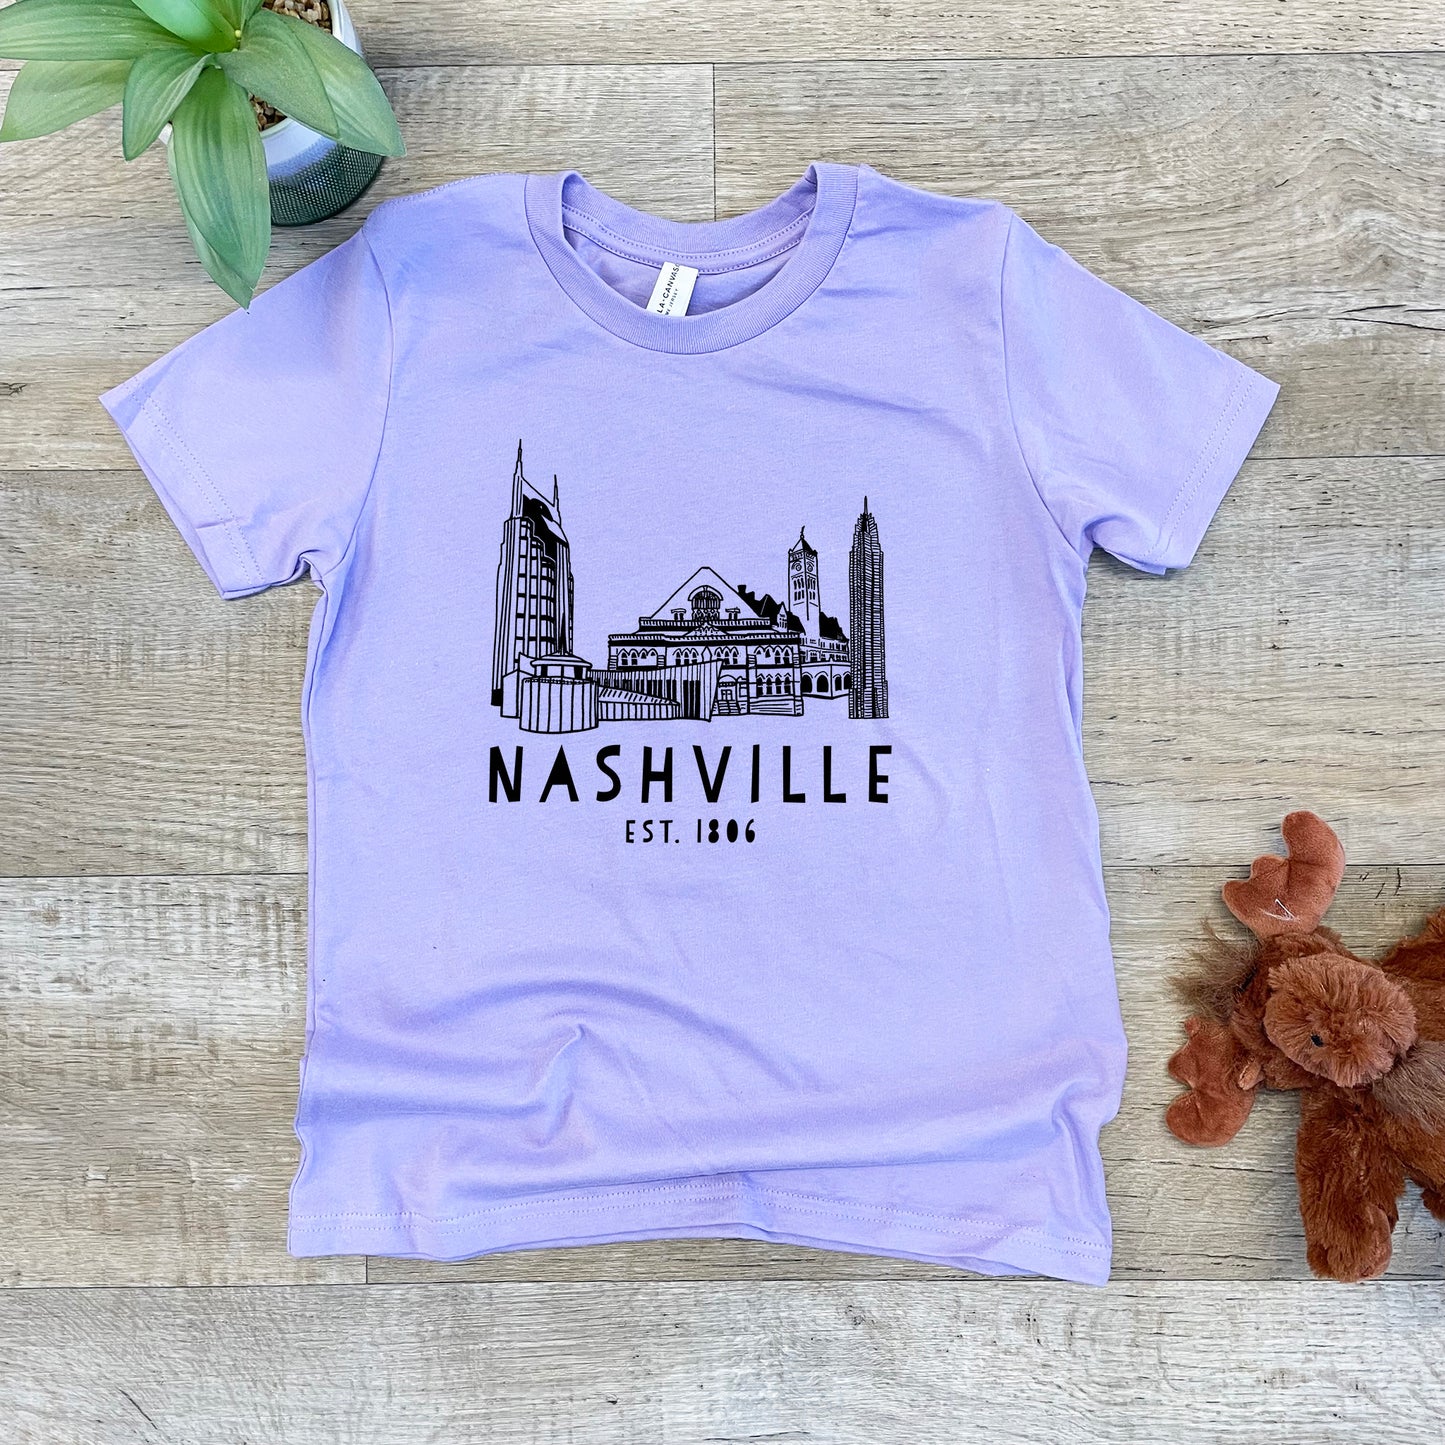 Nashville Skyline - Kid's Tee - Columbia Blue or Lavender